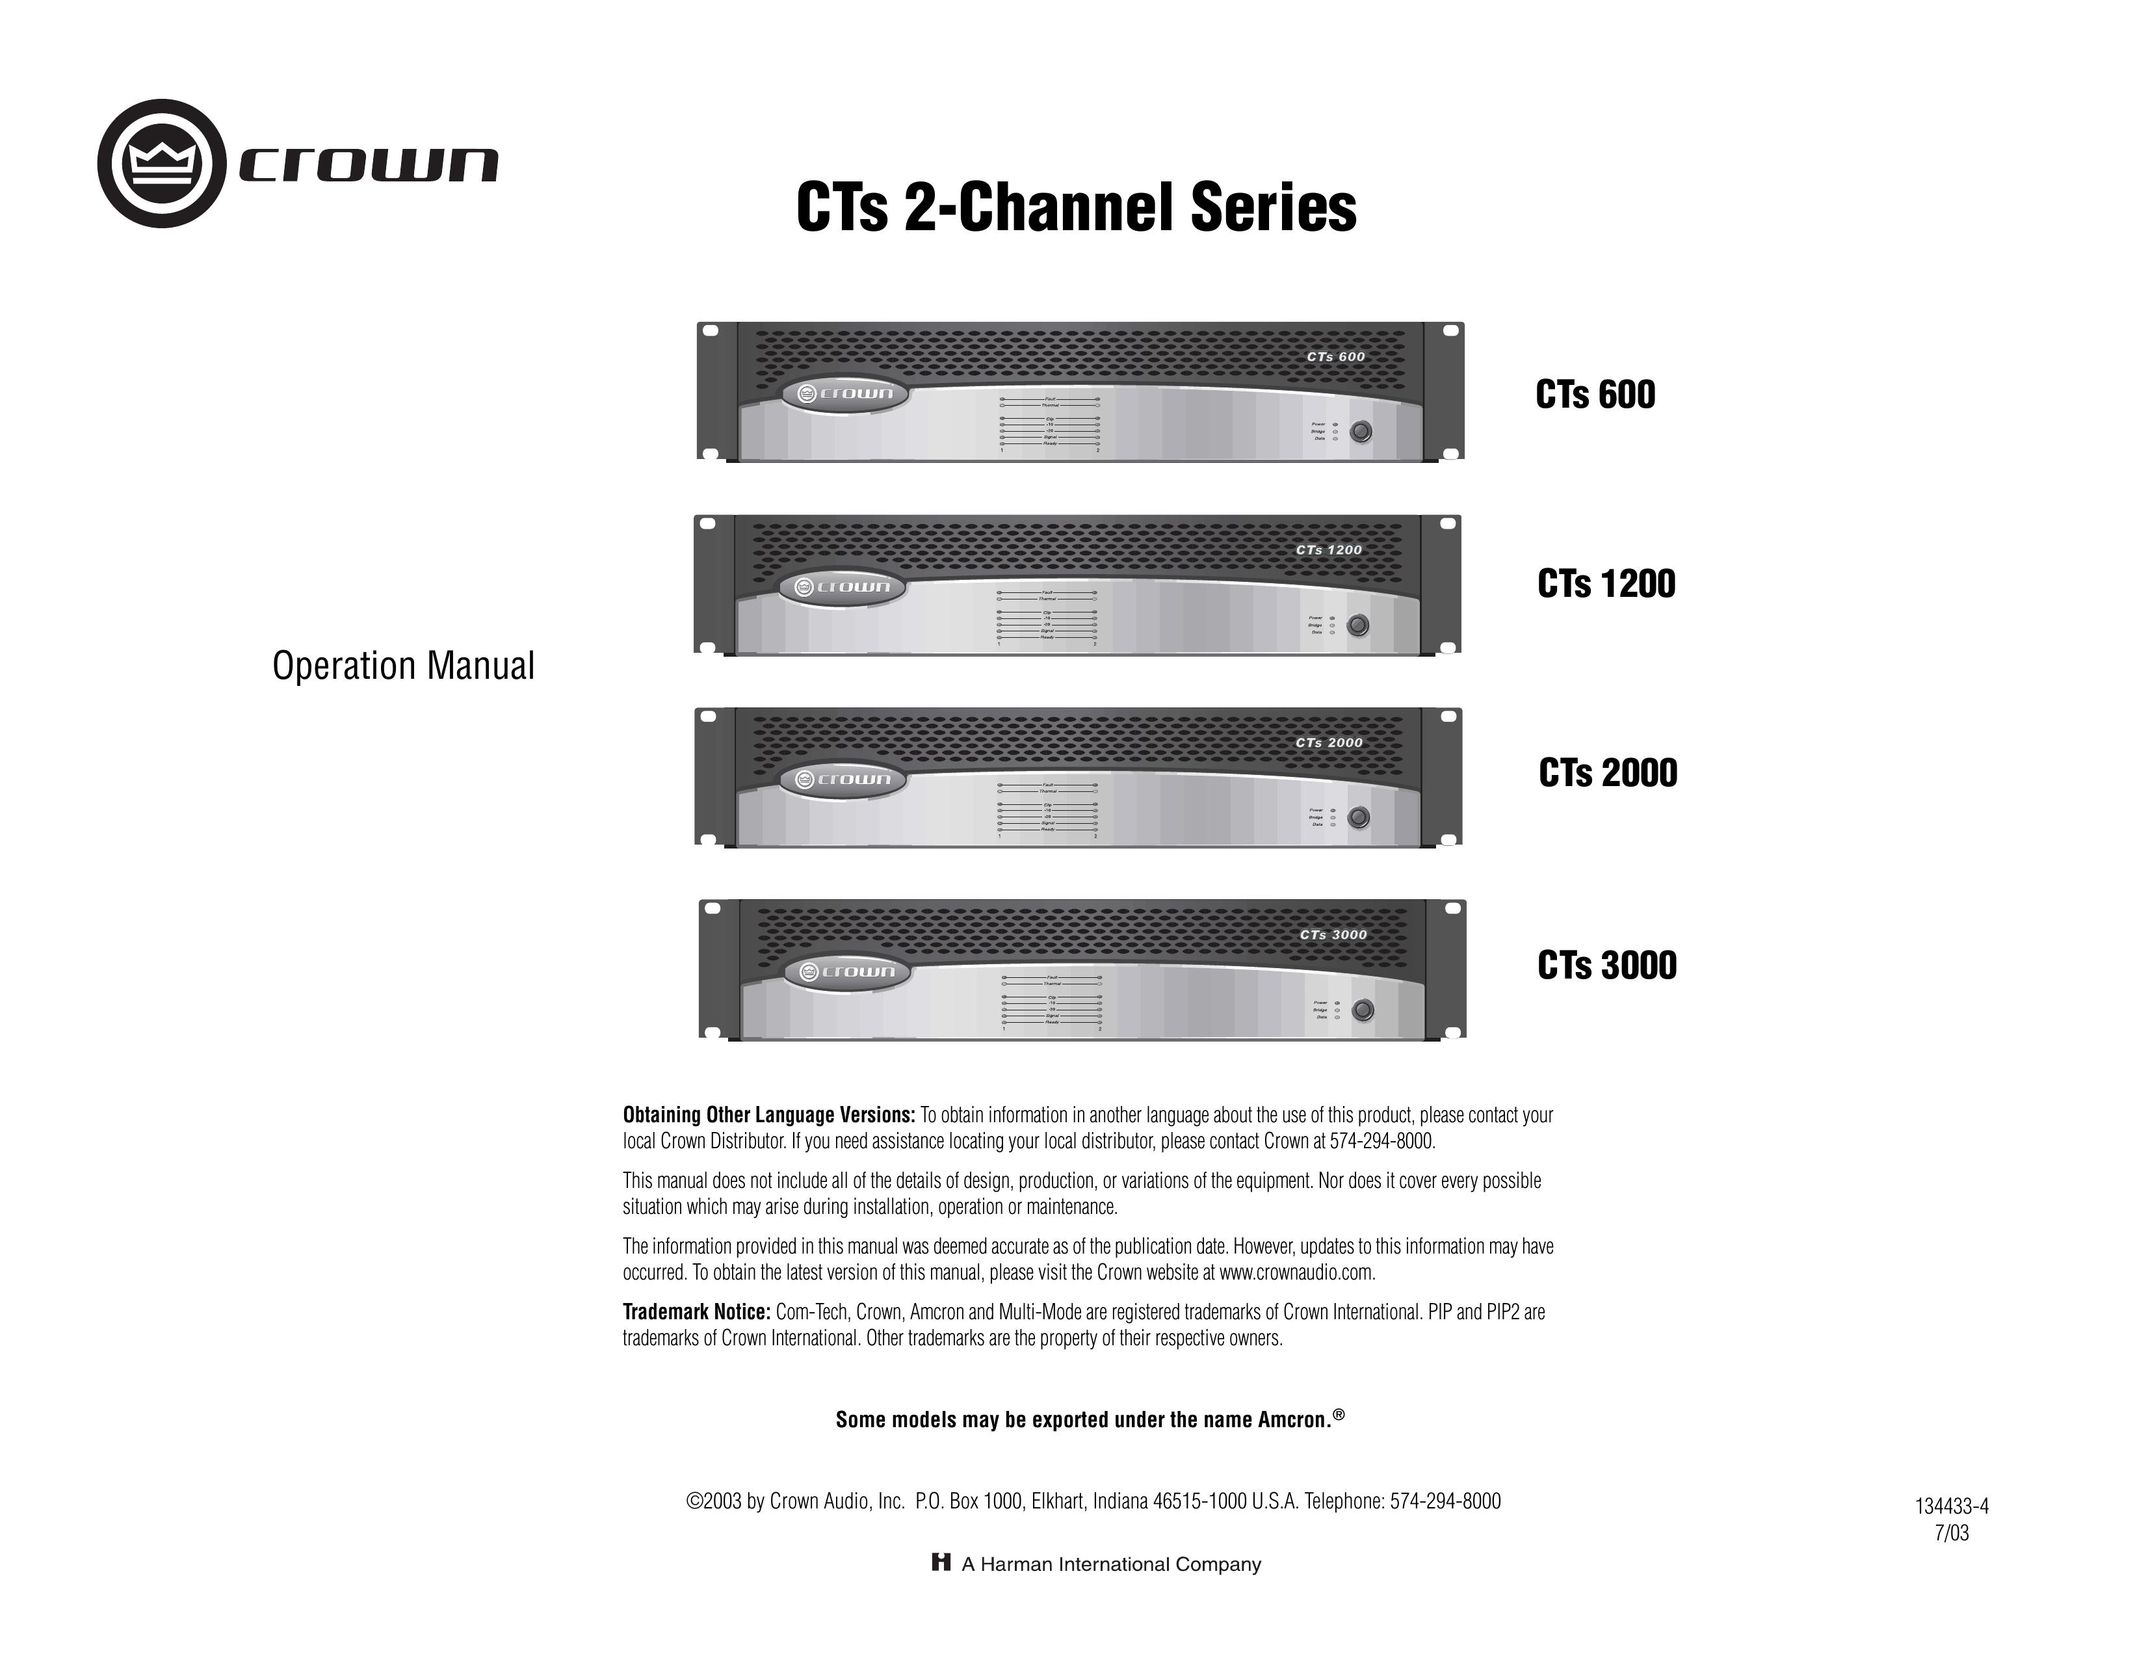 Crown Audio CTs 600 Speaker User Manual